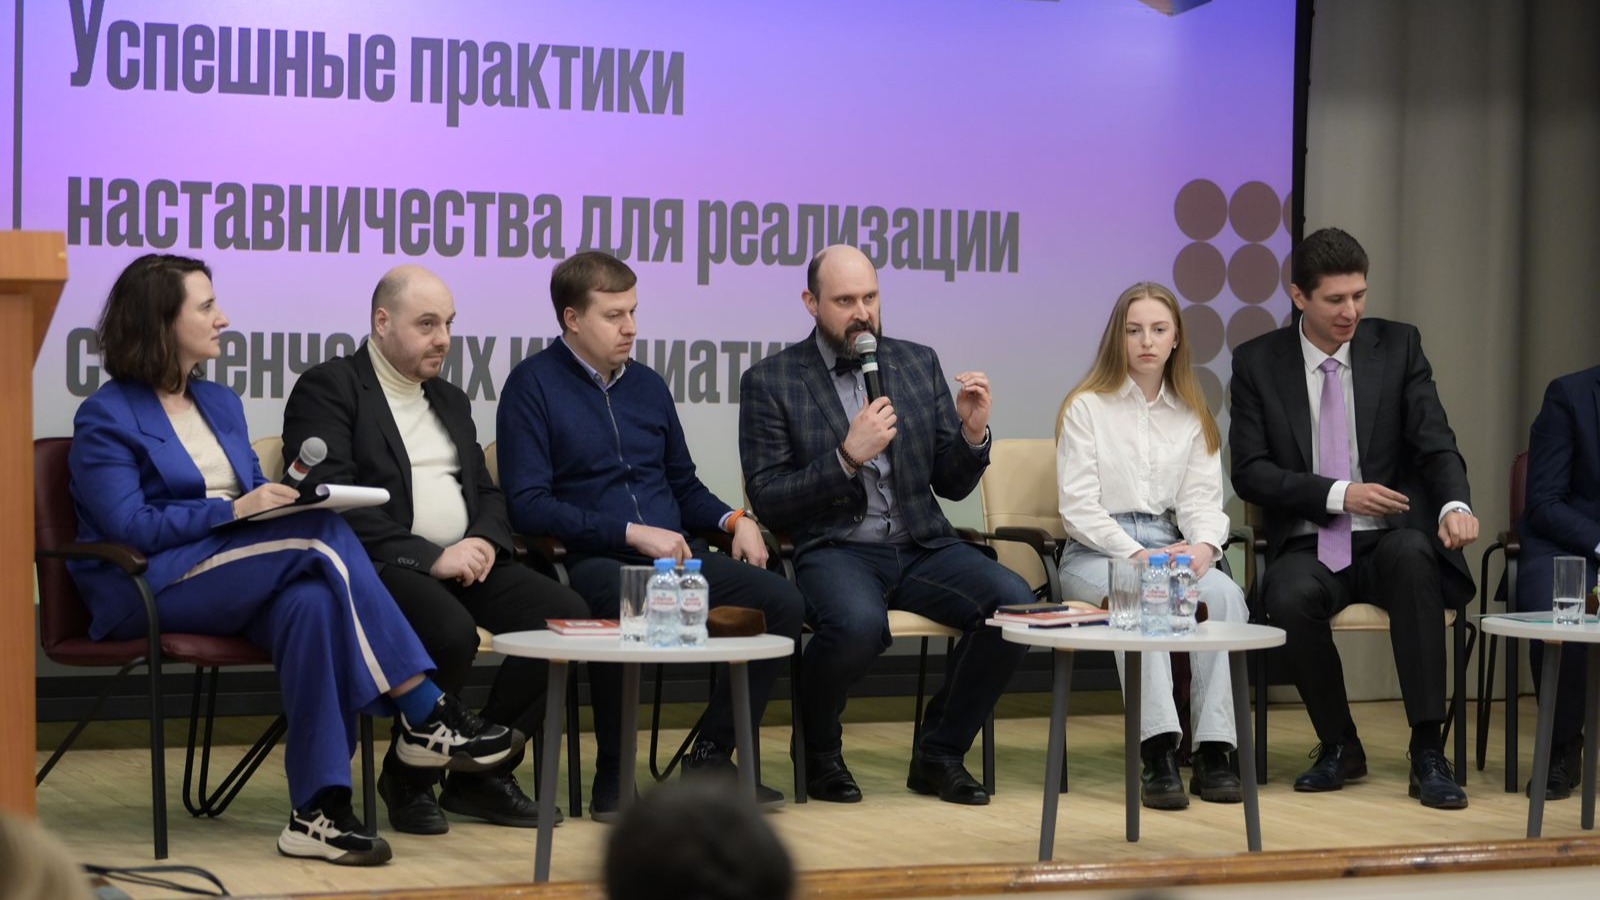 Лидеры России раскрыли секреты успешного наставничества на Петербургском международном образовательном форуме